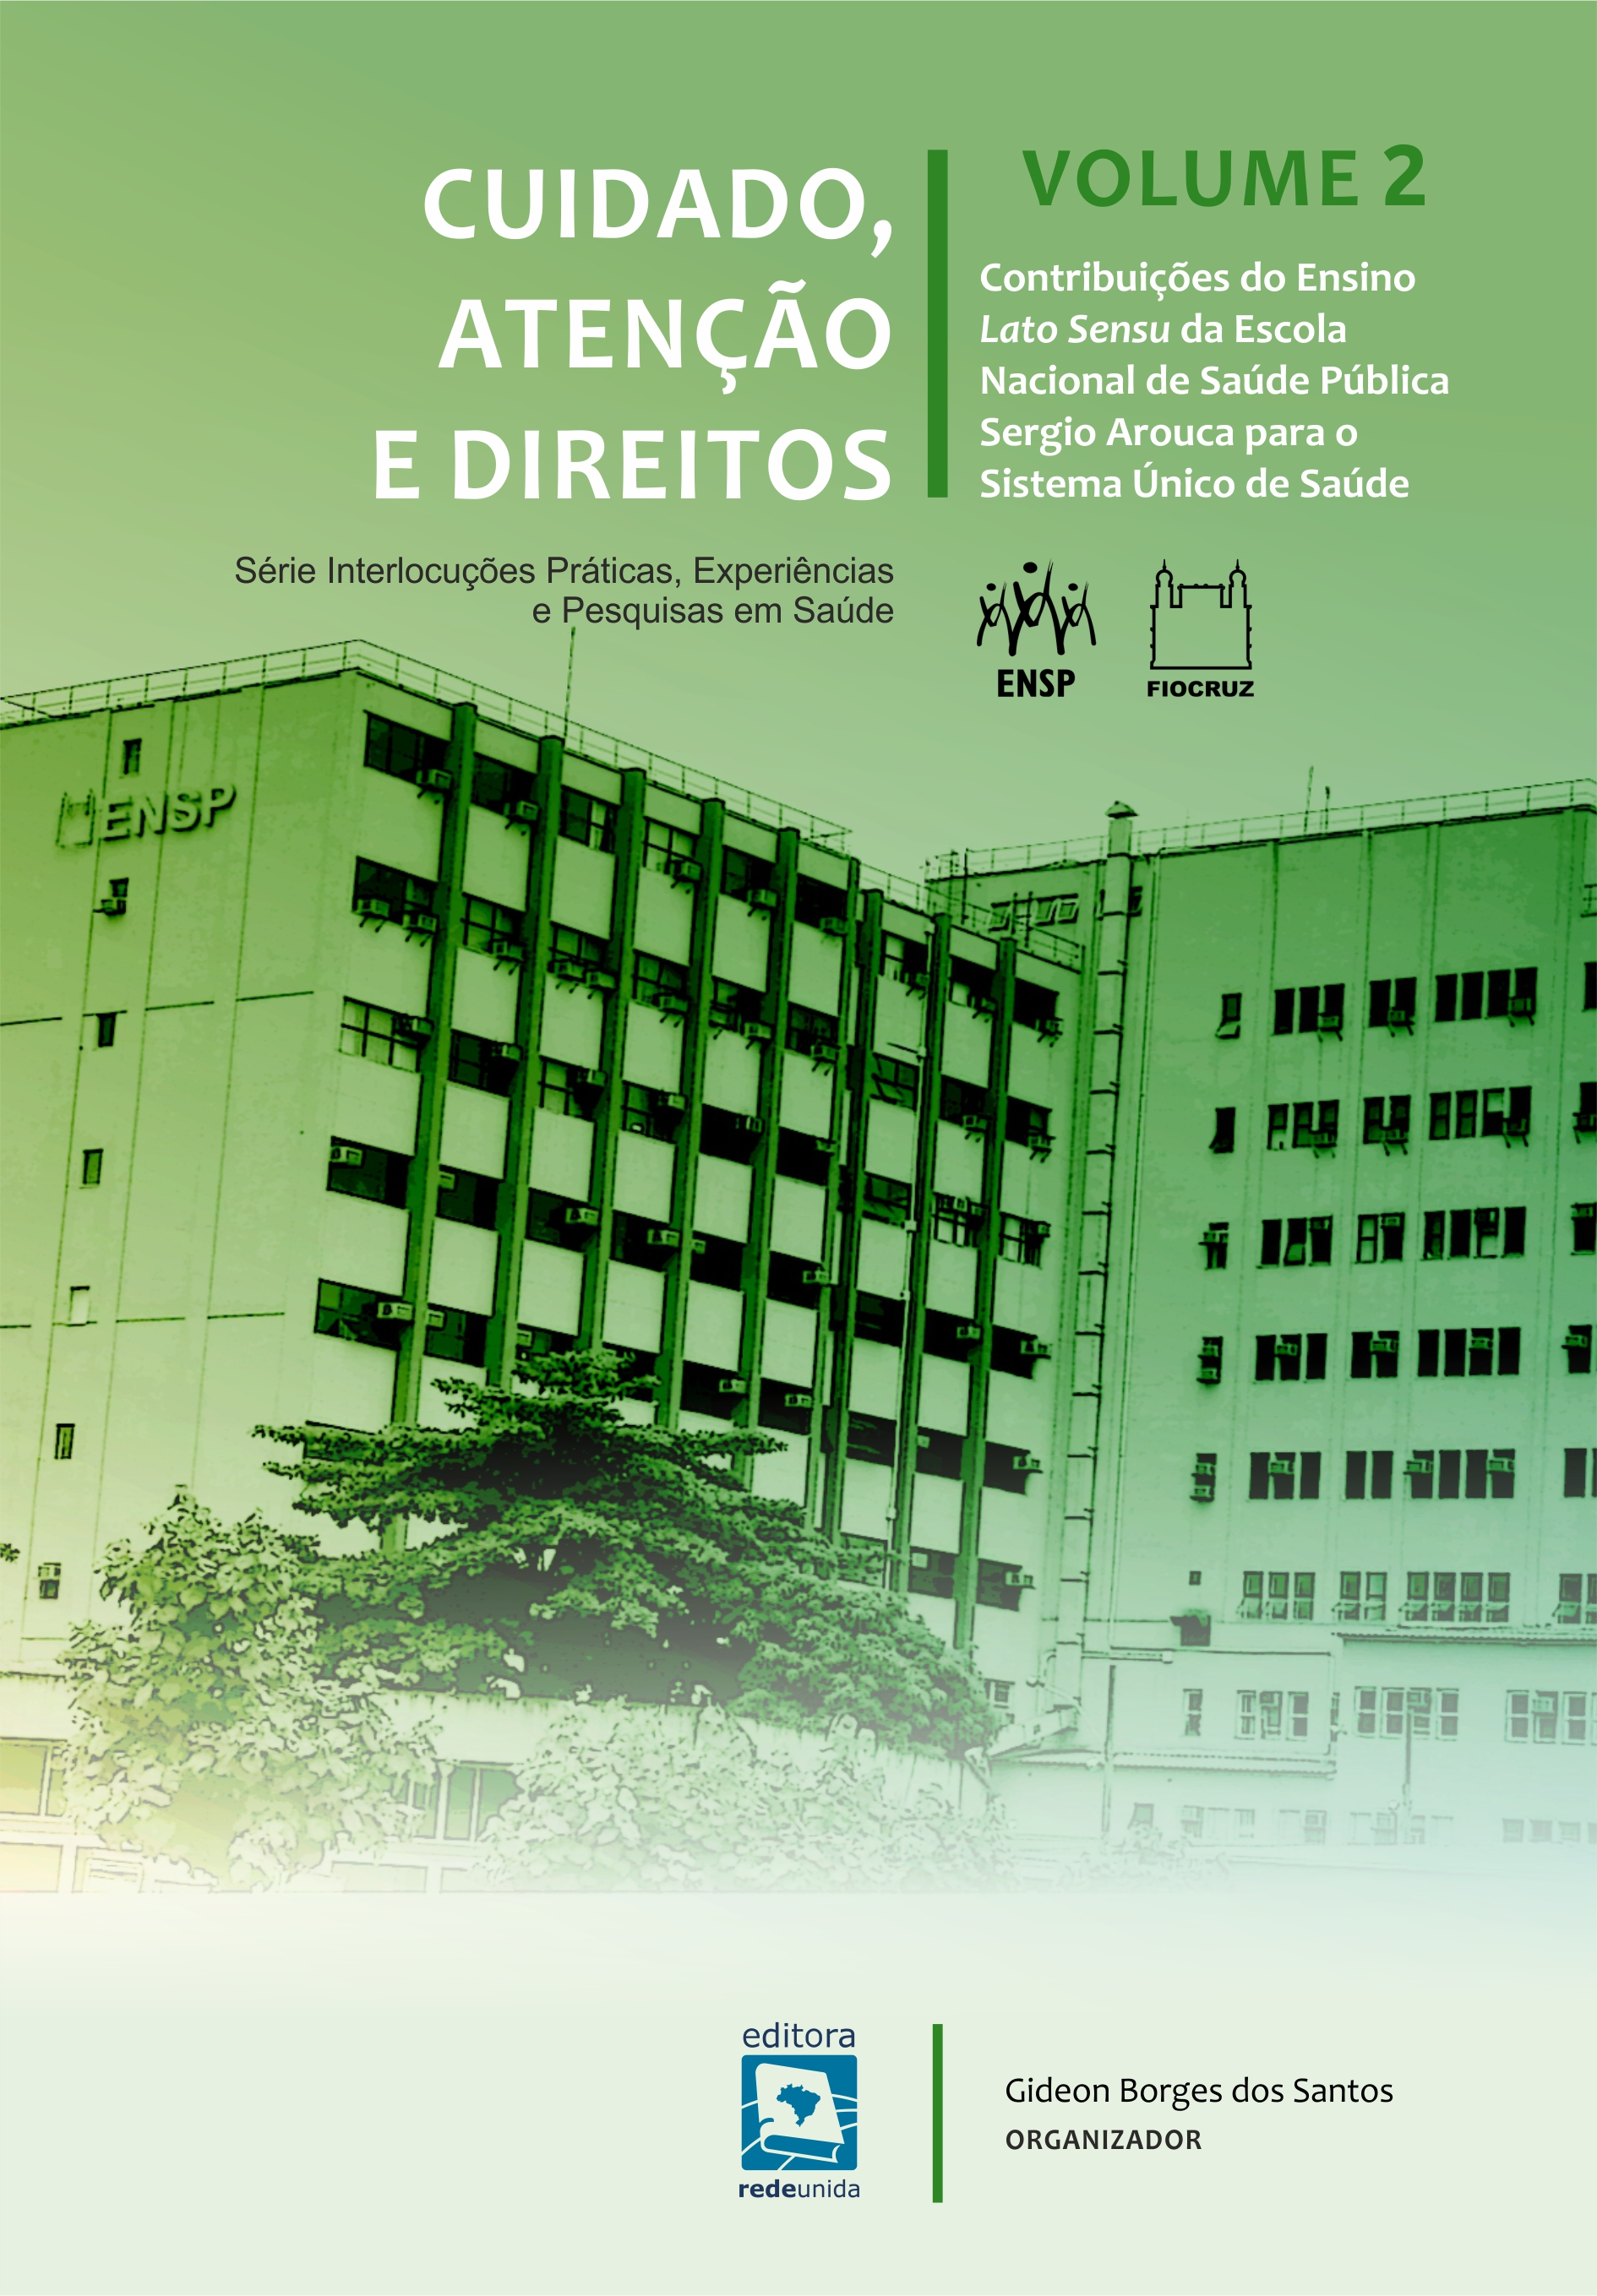 Cuidado, atenção e direitos: contribuições do ensino Lato Sensu da Escola Nacional de Saúde Pública Sergio Arouca para o Sistema Único de Saúde – volume 2